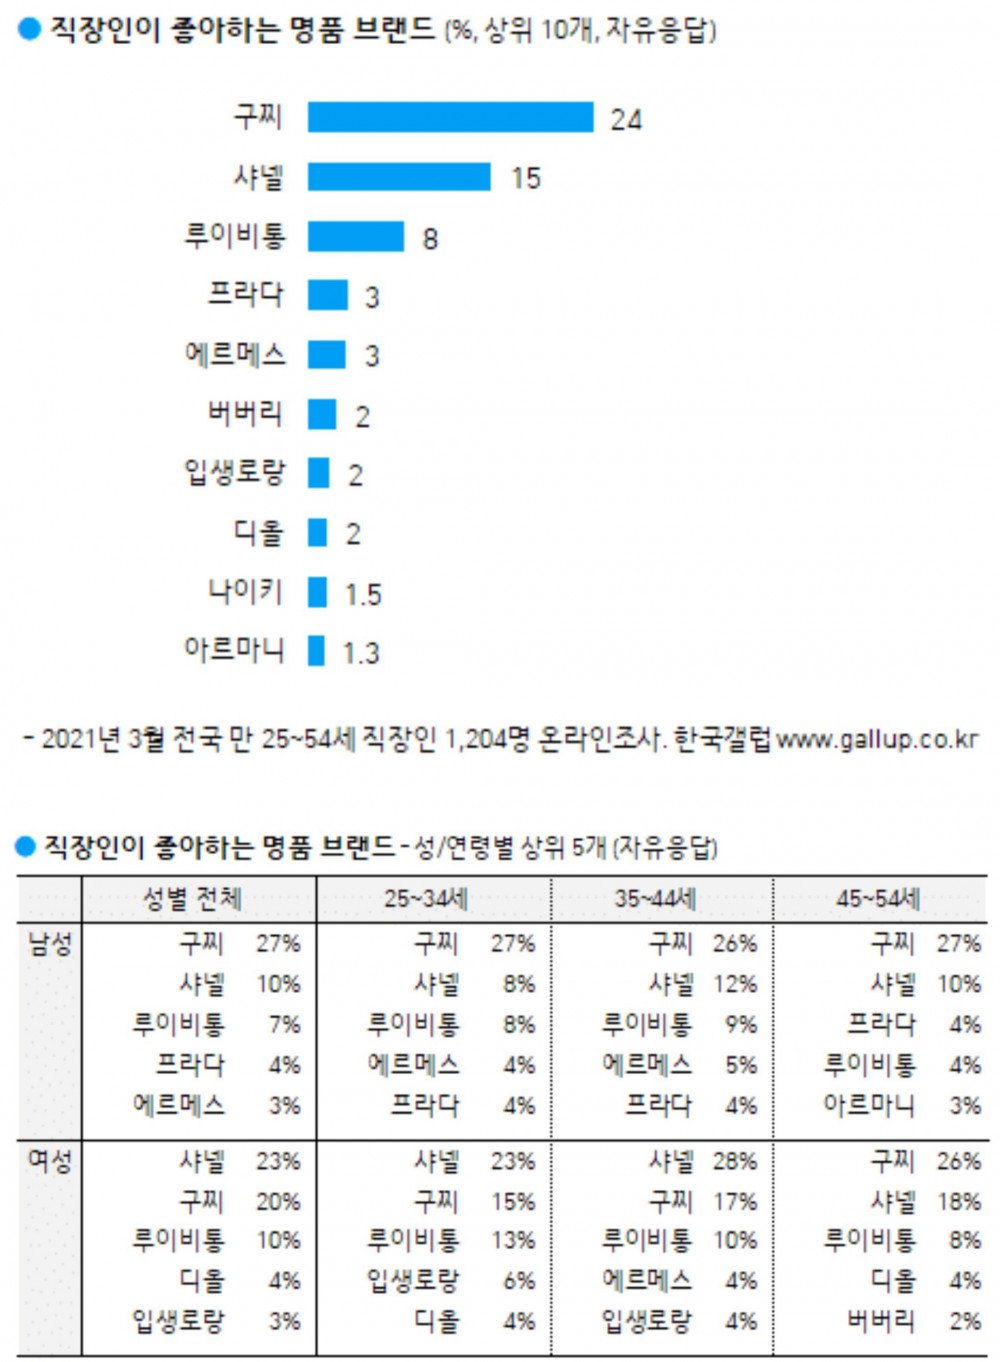 Какие люксовые бренды наиболее популярны в Южной Корее?